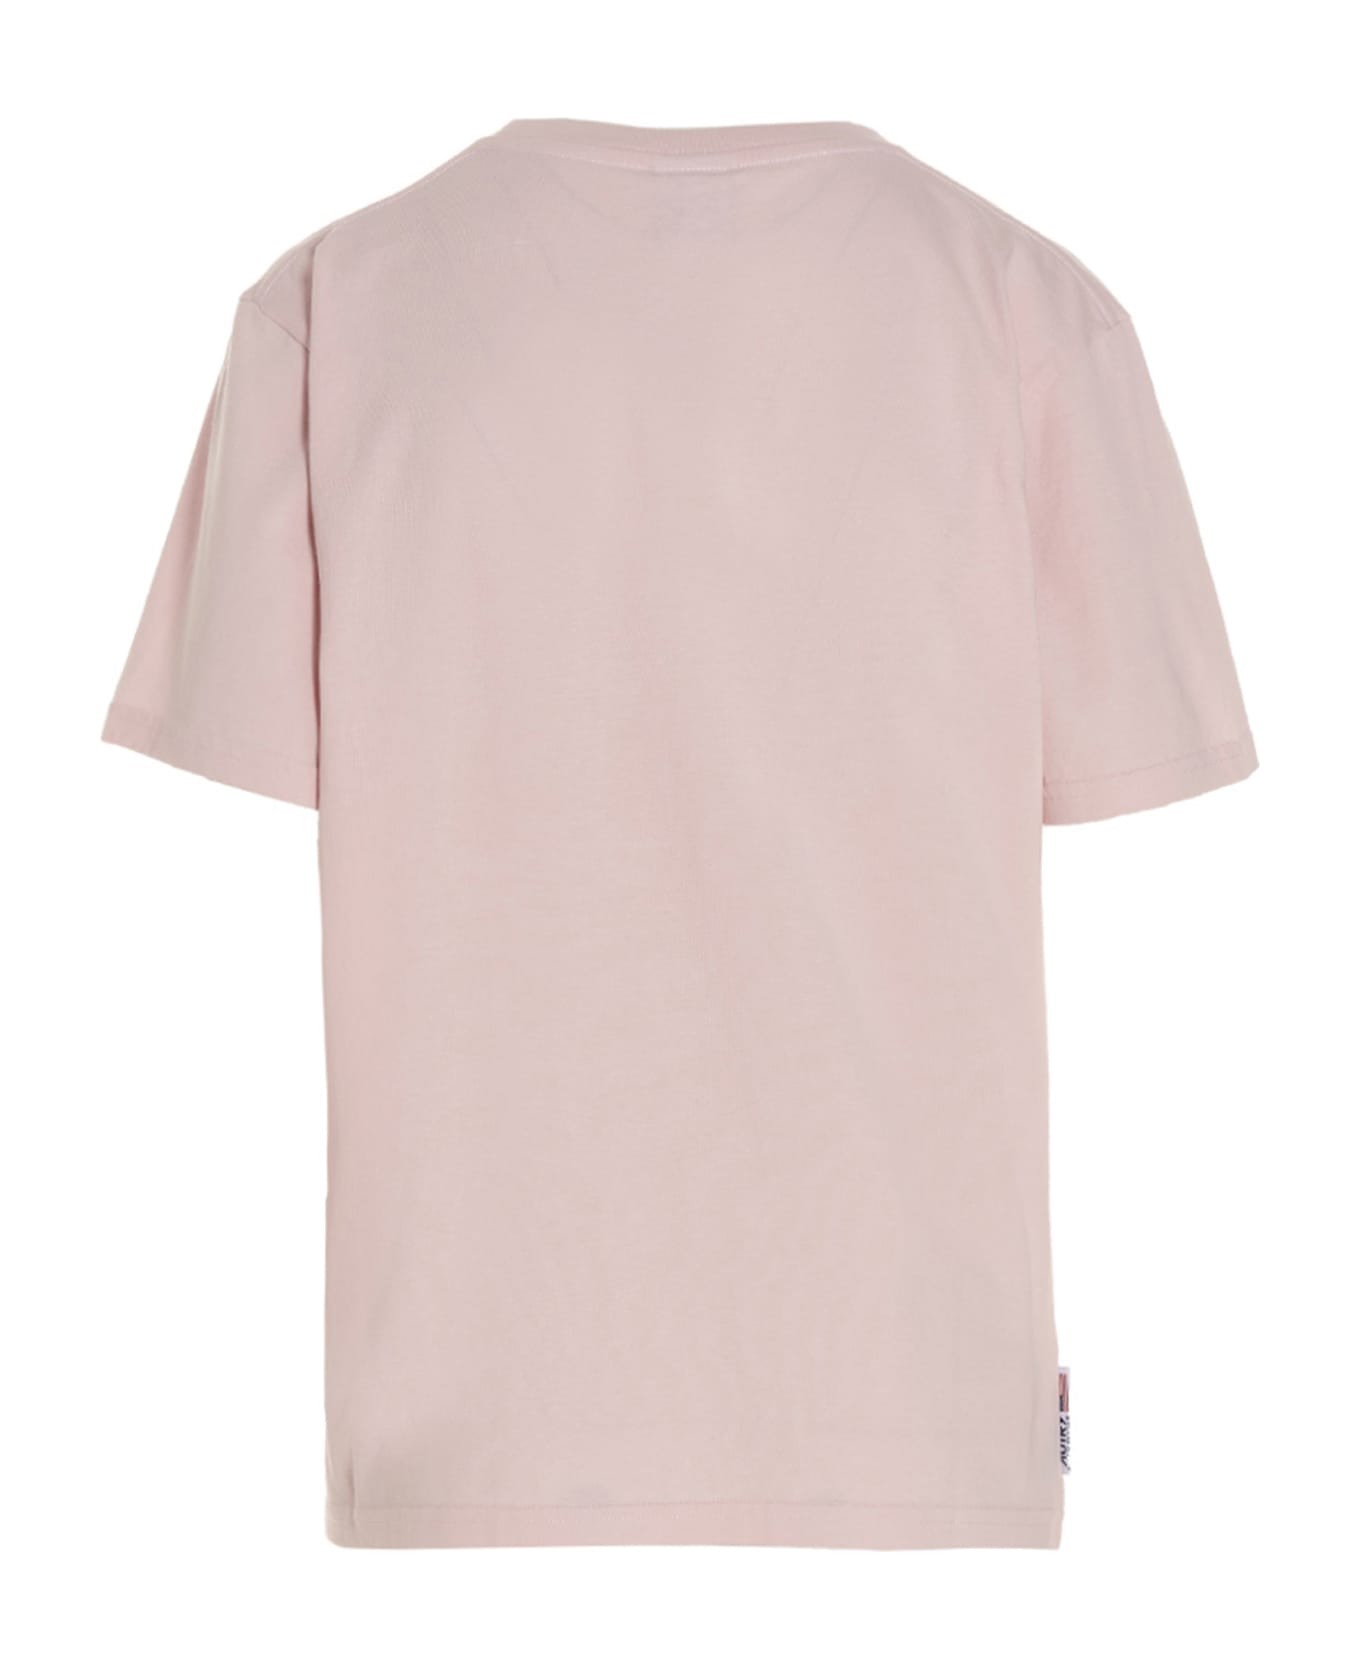 Autry Tennis Academy T-shirt - Pink